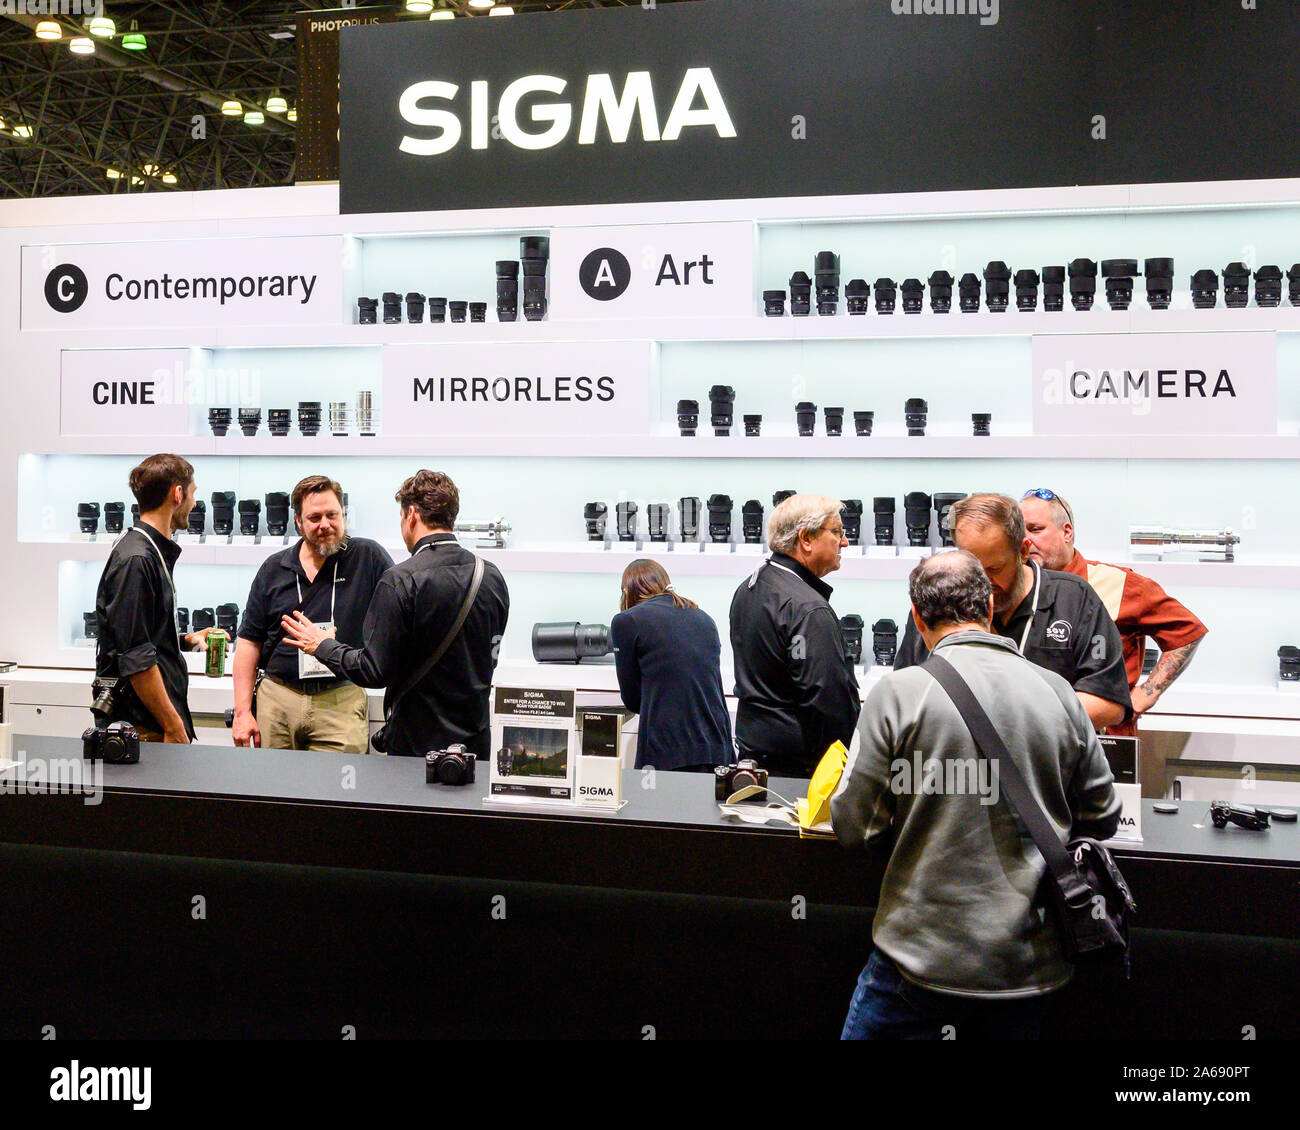 Le stand Sigma vu au cours de la PhotoPlus Expo conference qui a eu lieu à l'Jacob K. Javits Convention Center à New York. Banque D'Images